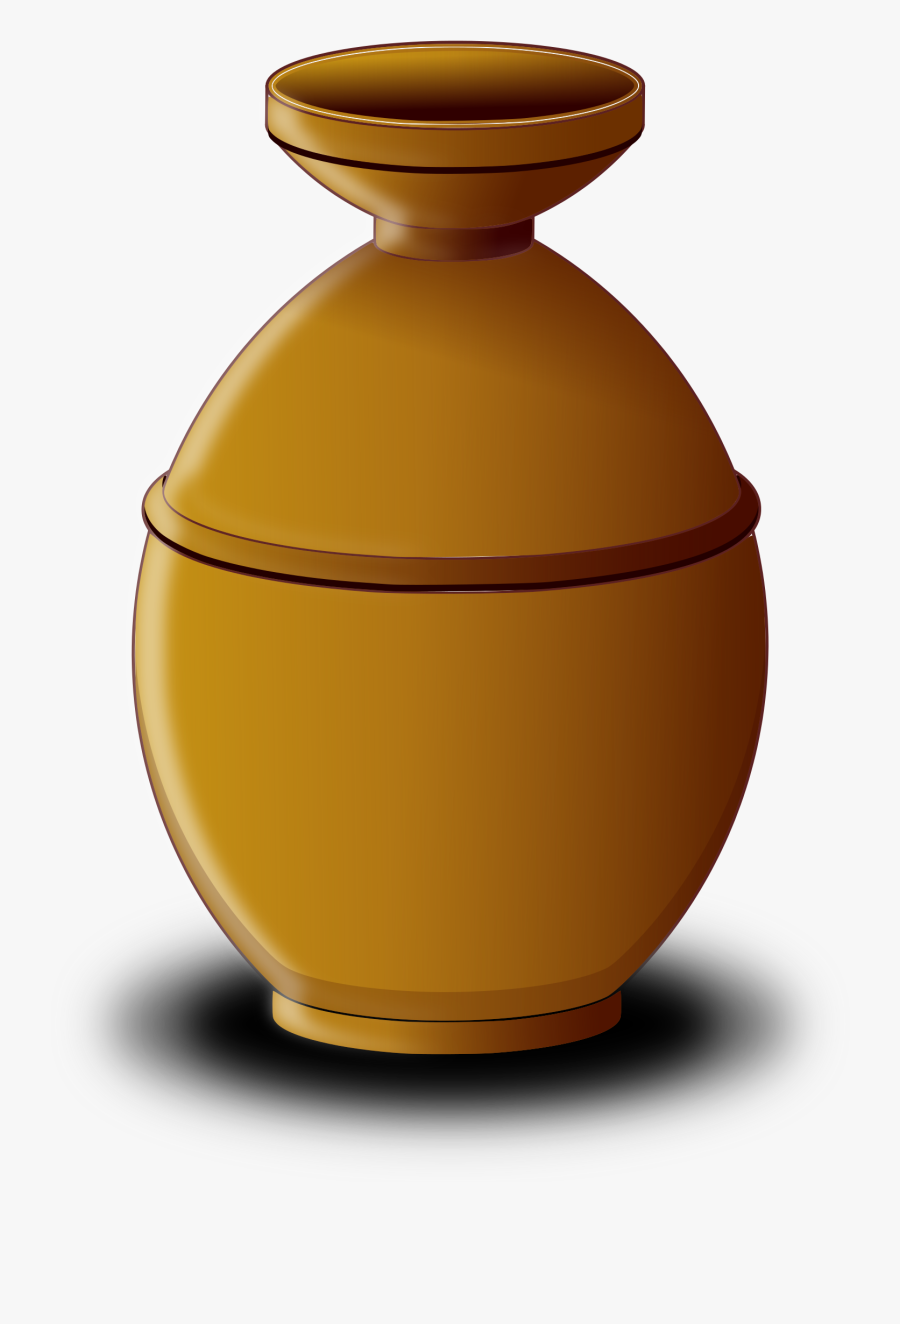 Terracotta Pot Clip Arts - Pot Png, Transparent Clipart